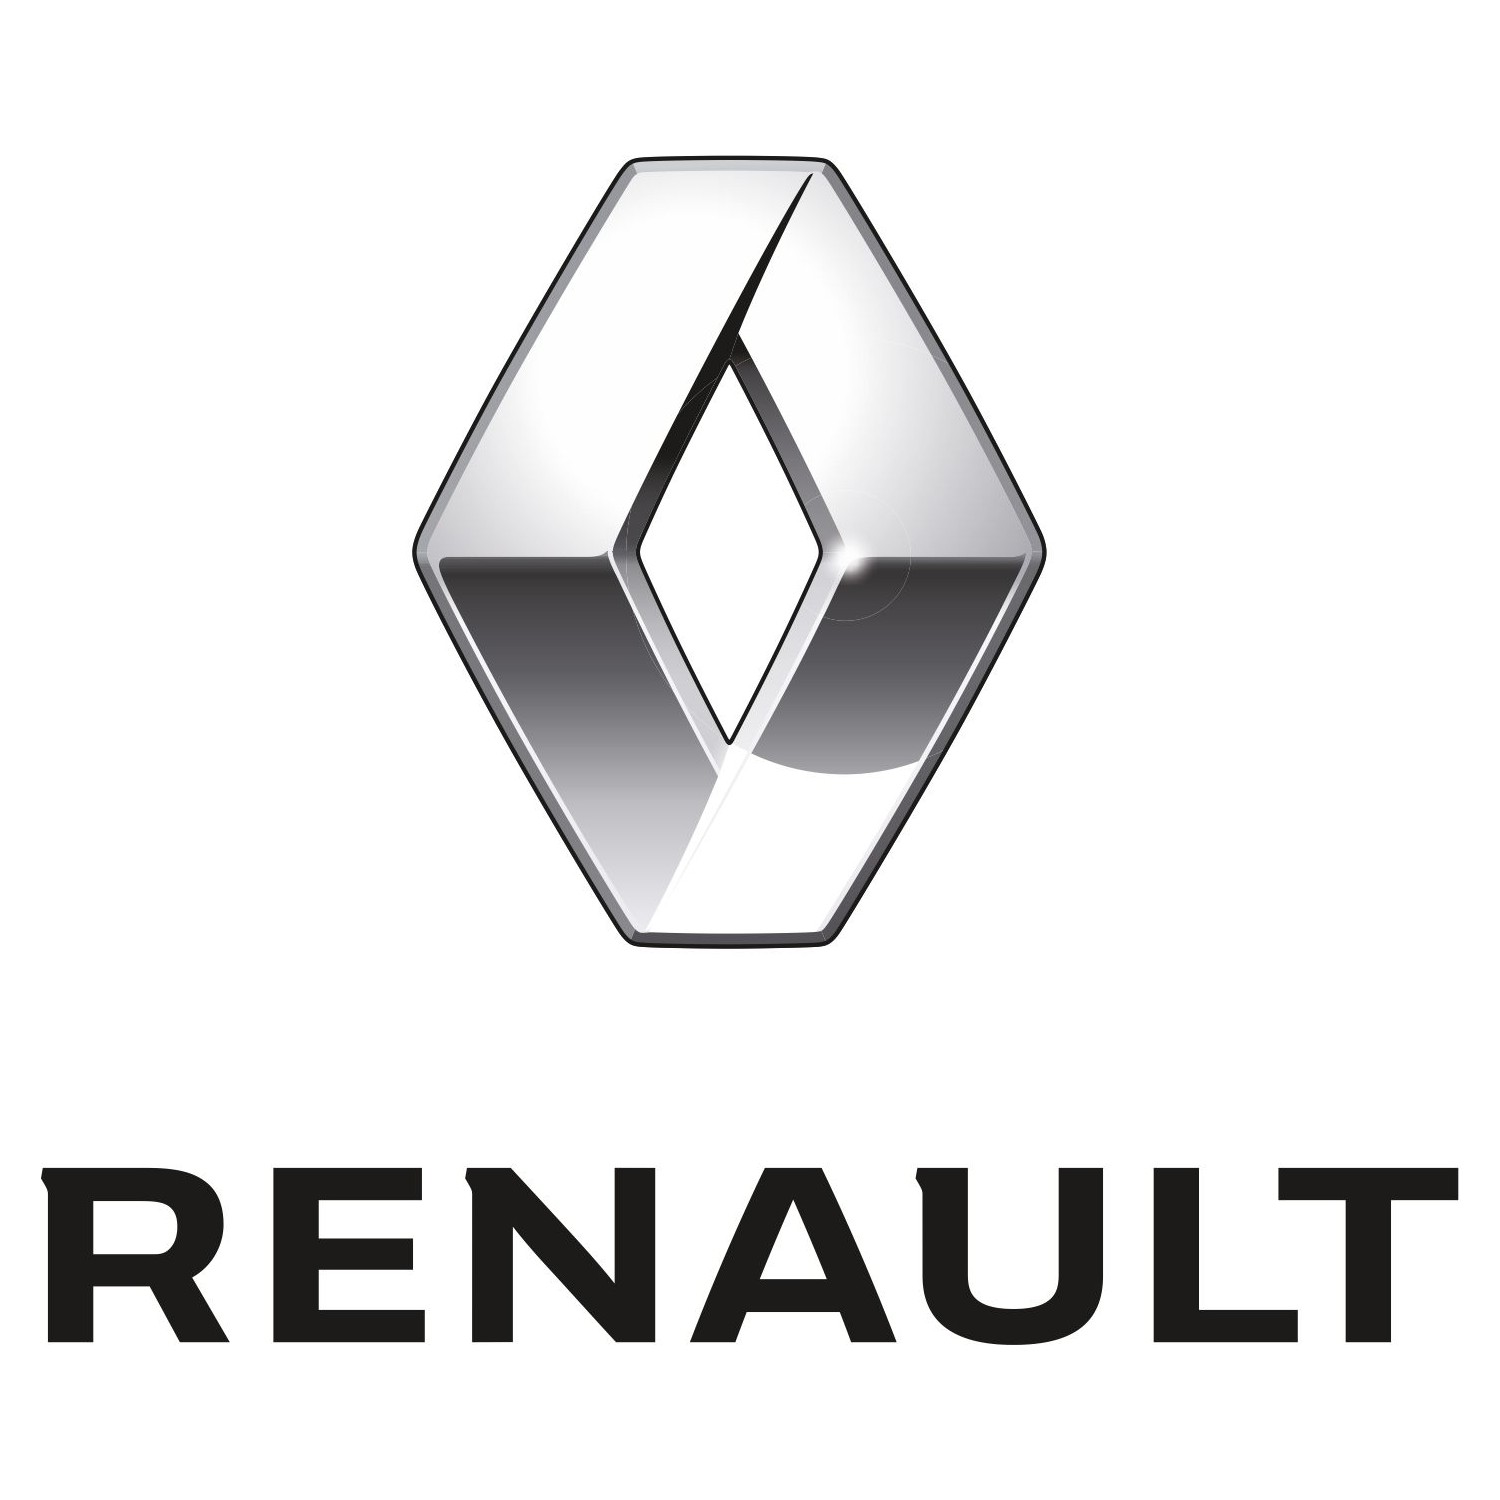 Over de nieuwe auto van Renault